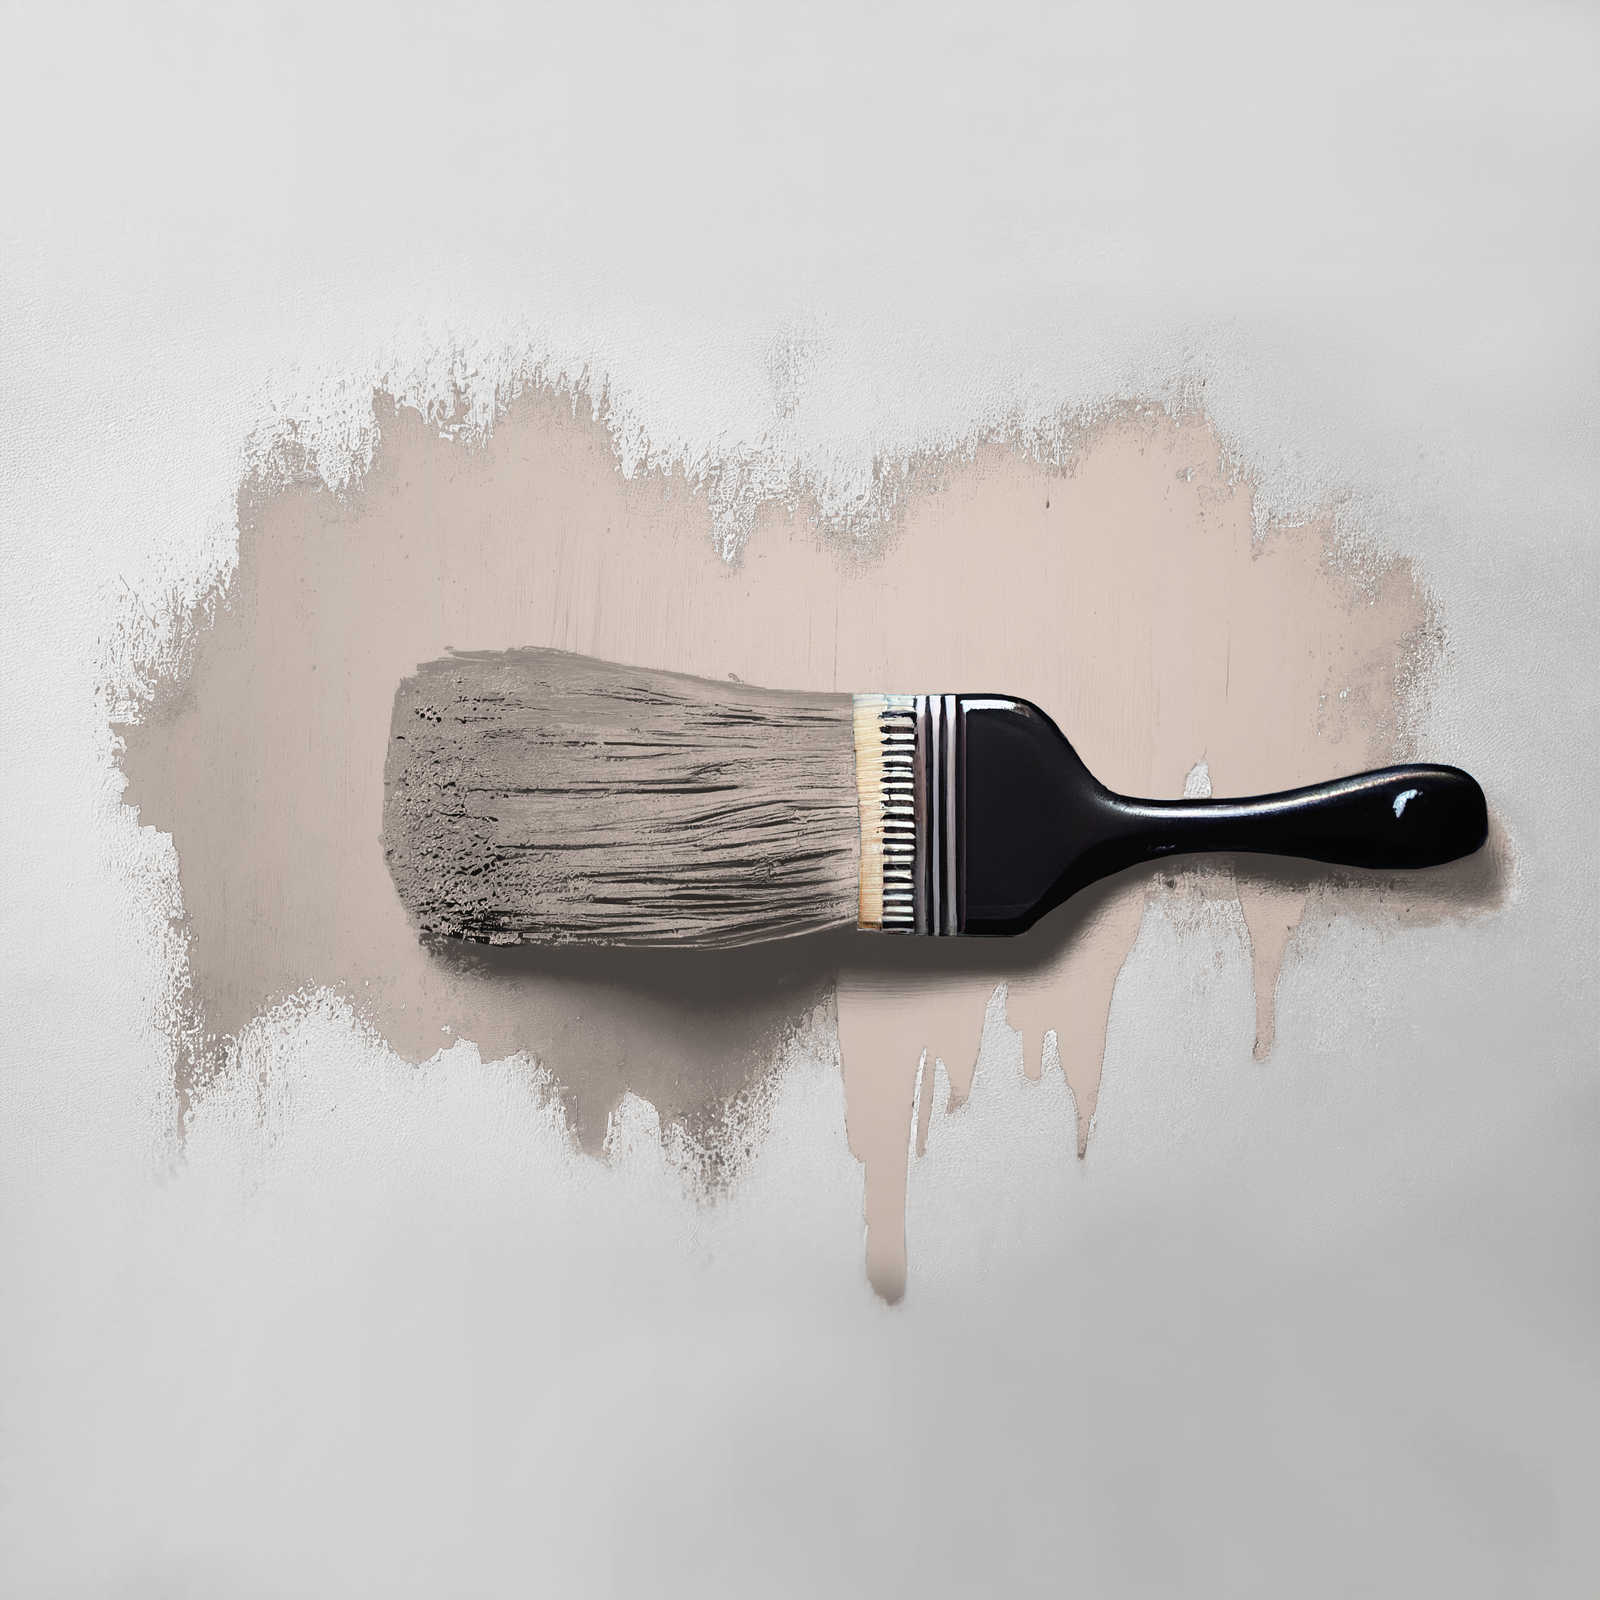             Pittura murale TCK6017 »Chilled Chai Latte« in grigio tenue – 2,5 litri
        